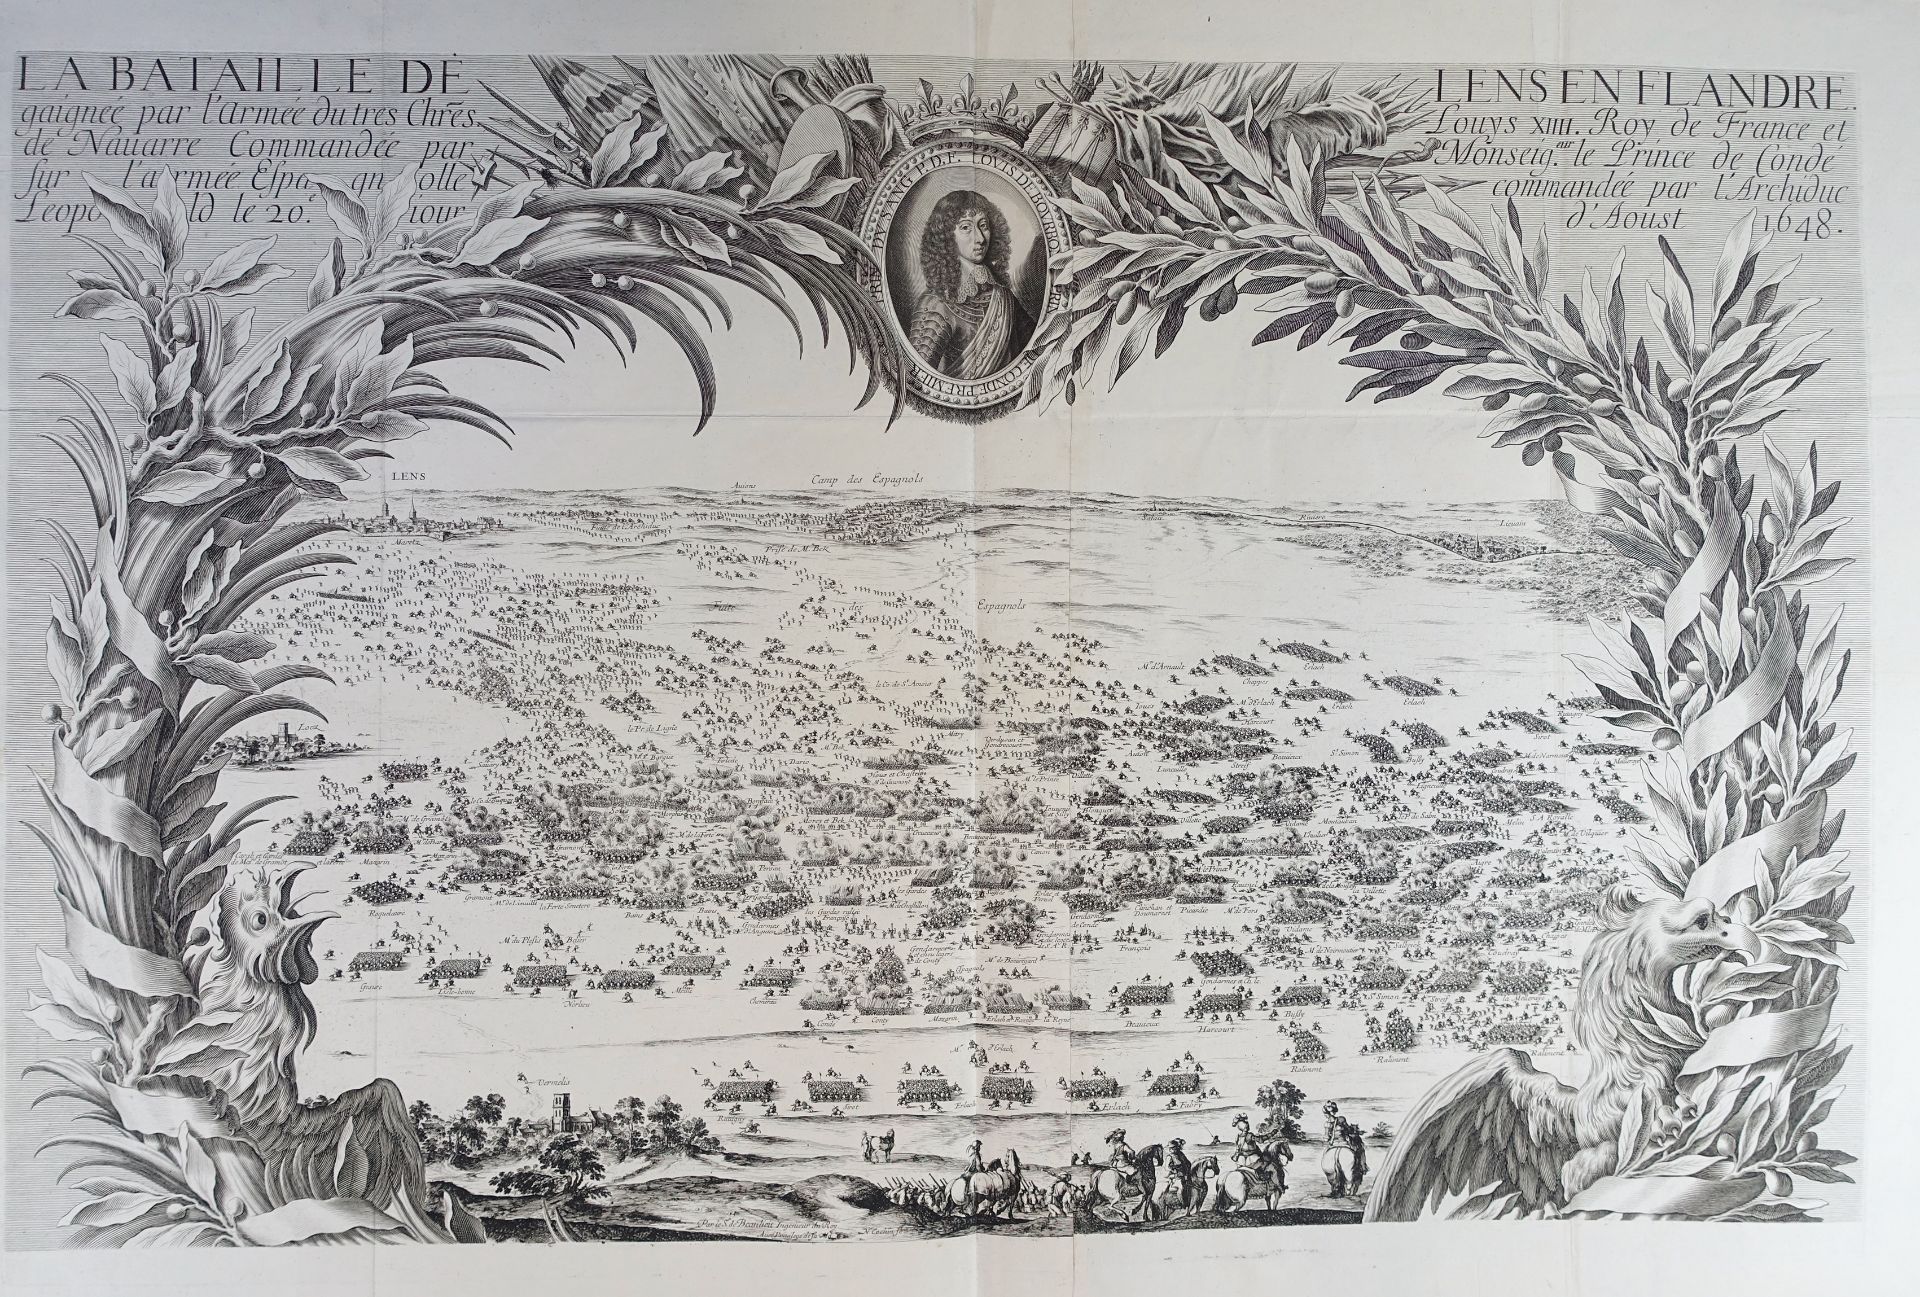 BATTLE OF LENS 1648 -- "LA BATAILLE DE LENS EN FLANDRE gaignée p